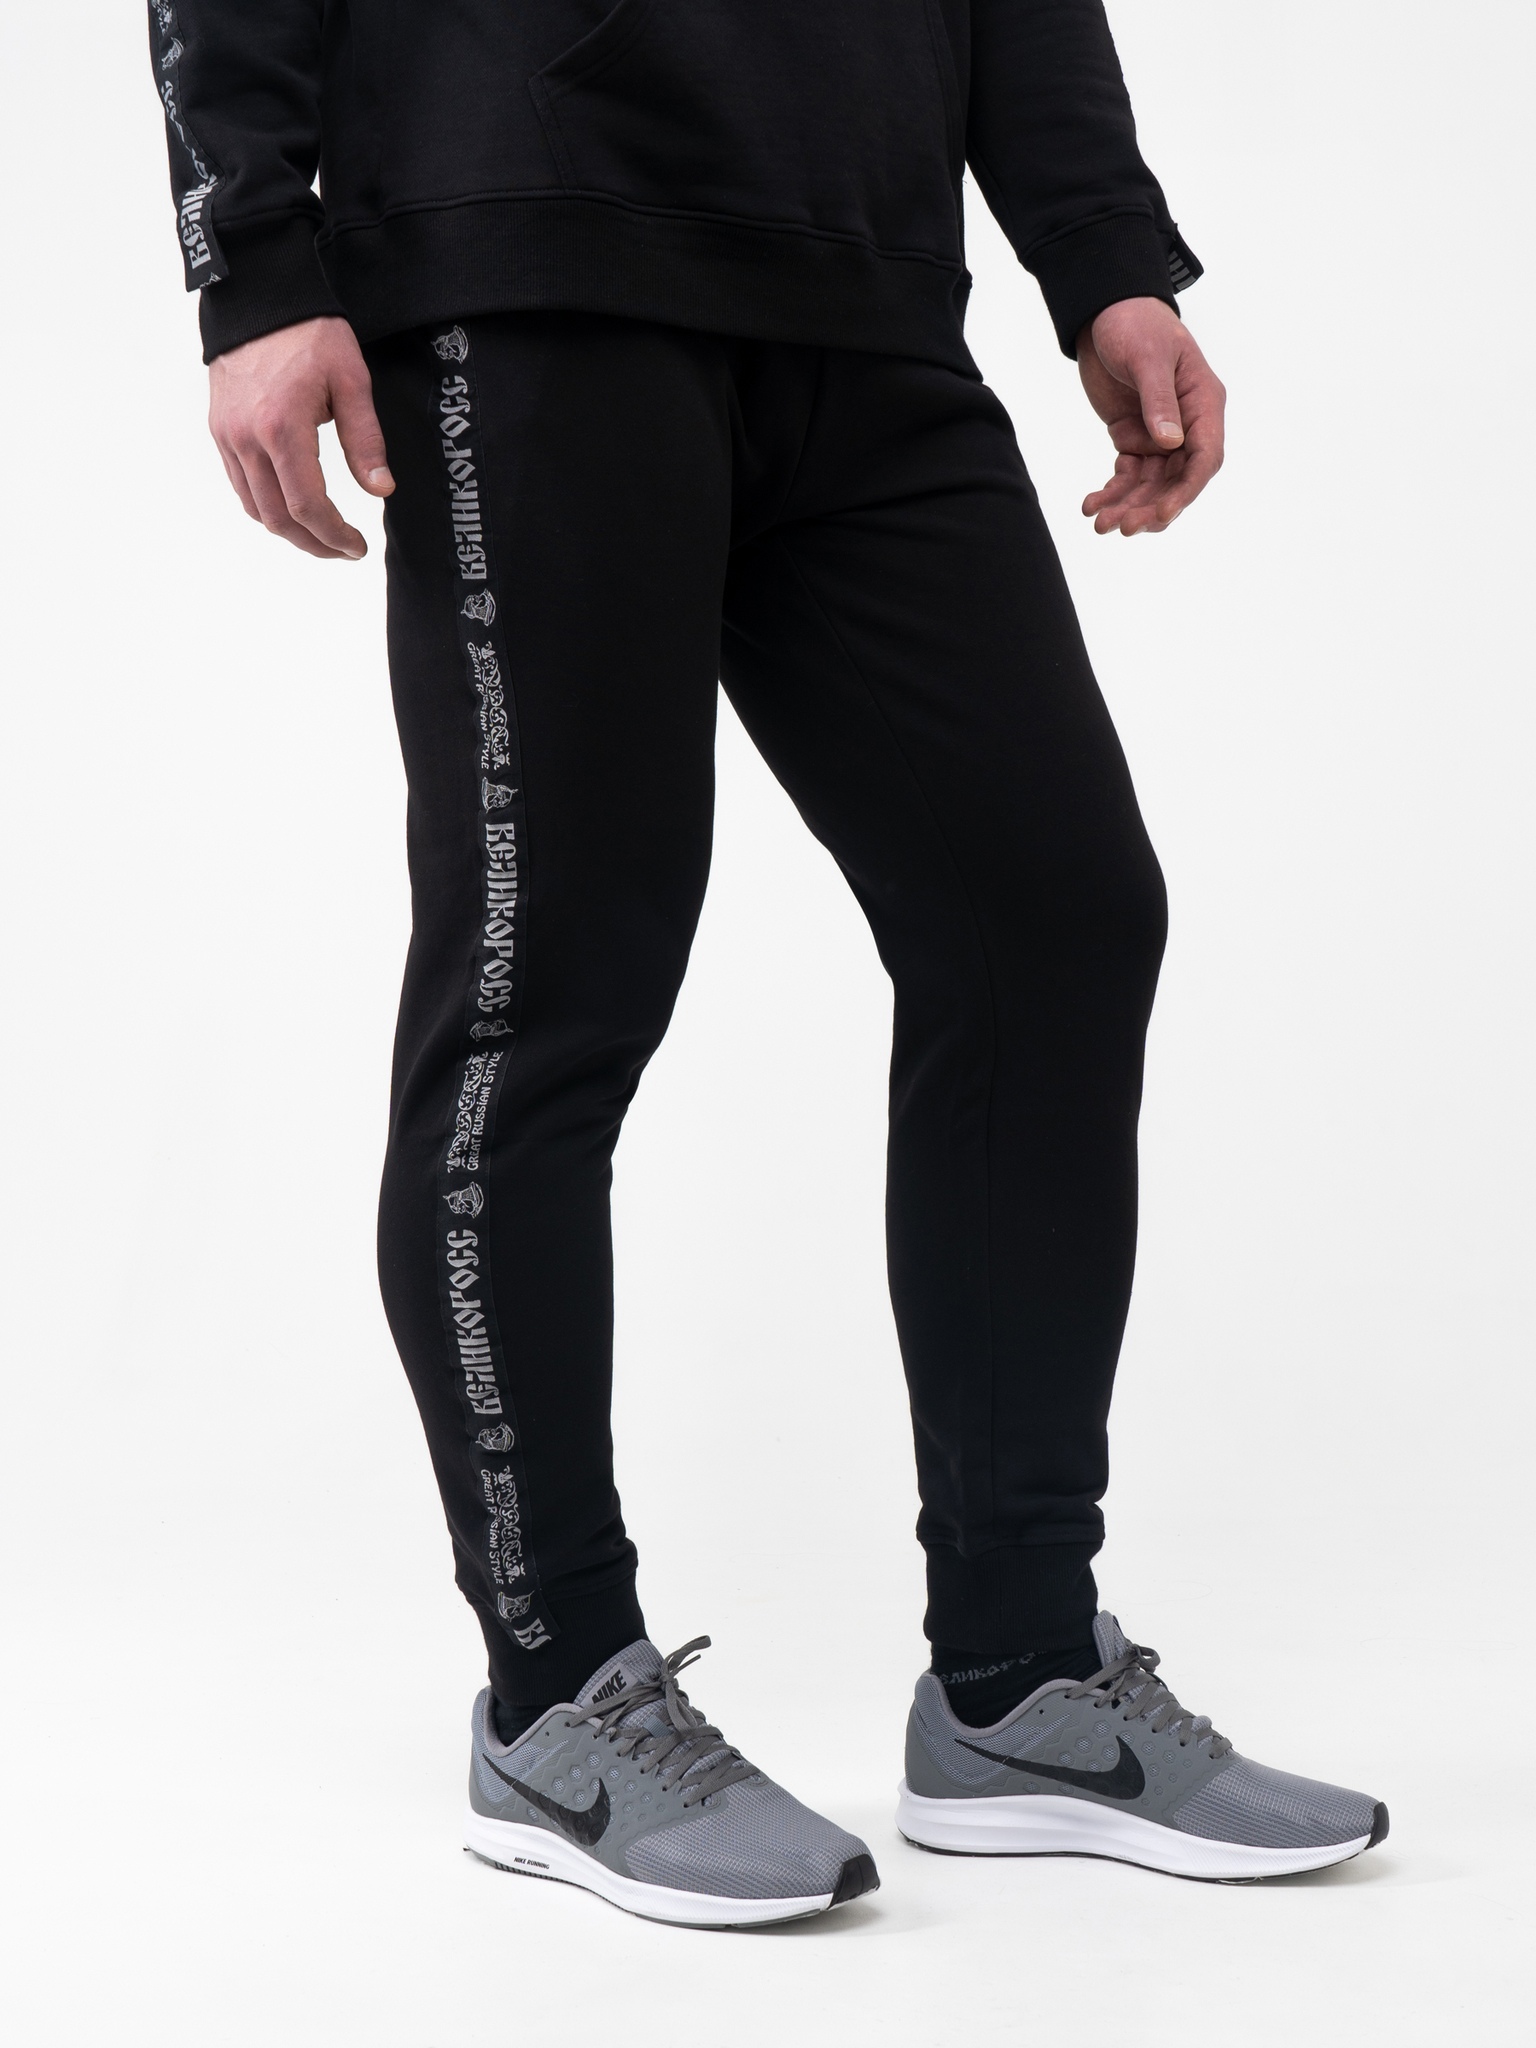 фото Спортивные брюки мужские великоросс bm черные 44 ru